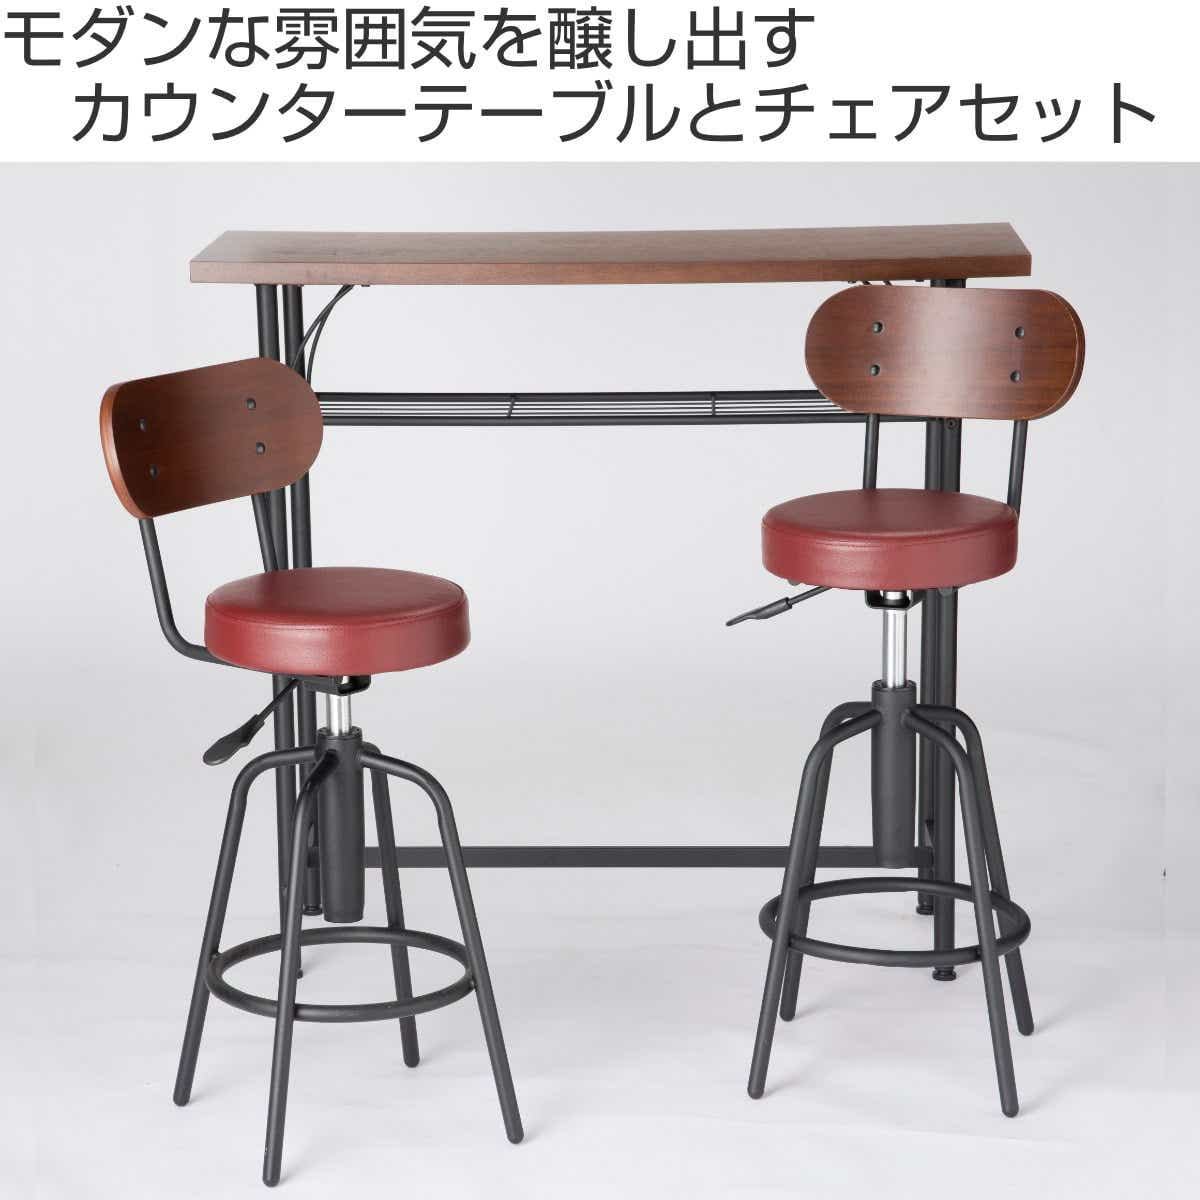 93-108cmカウンターチェア 木製 360度回転 足置き付き カウンター椅子